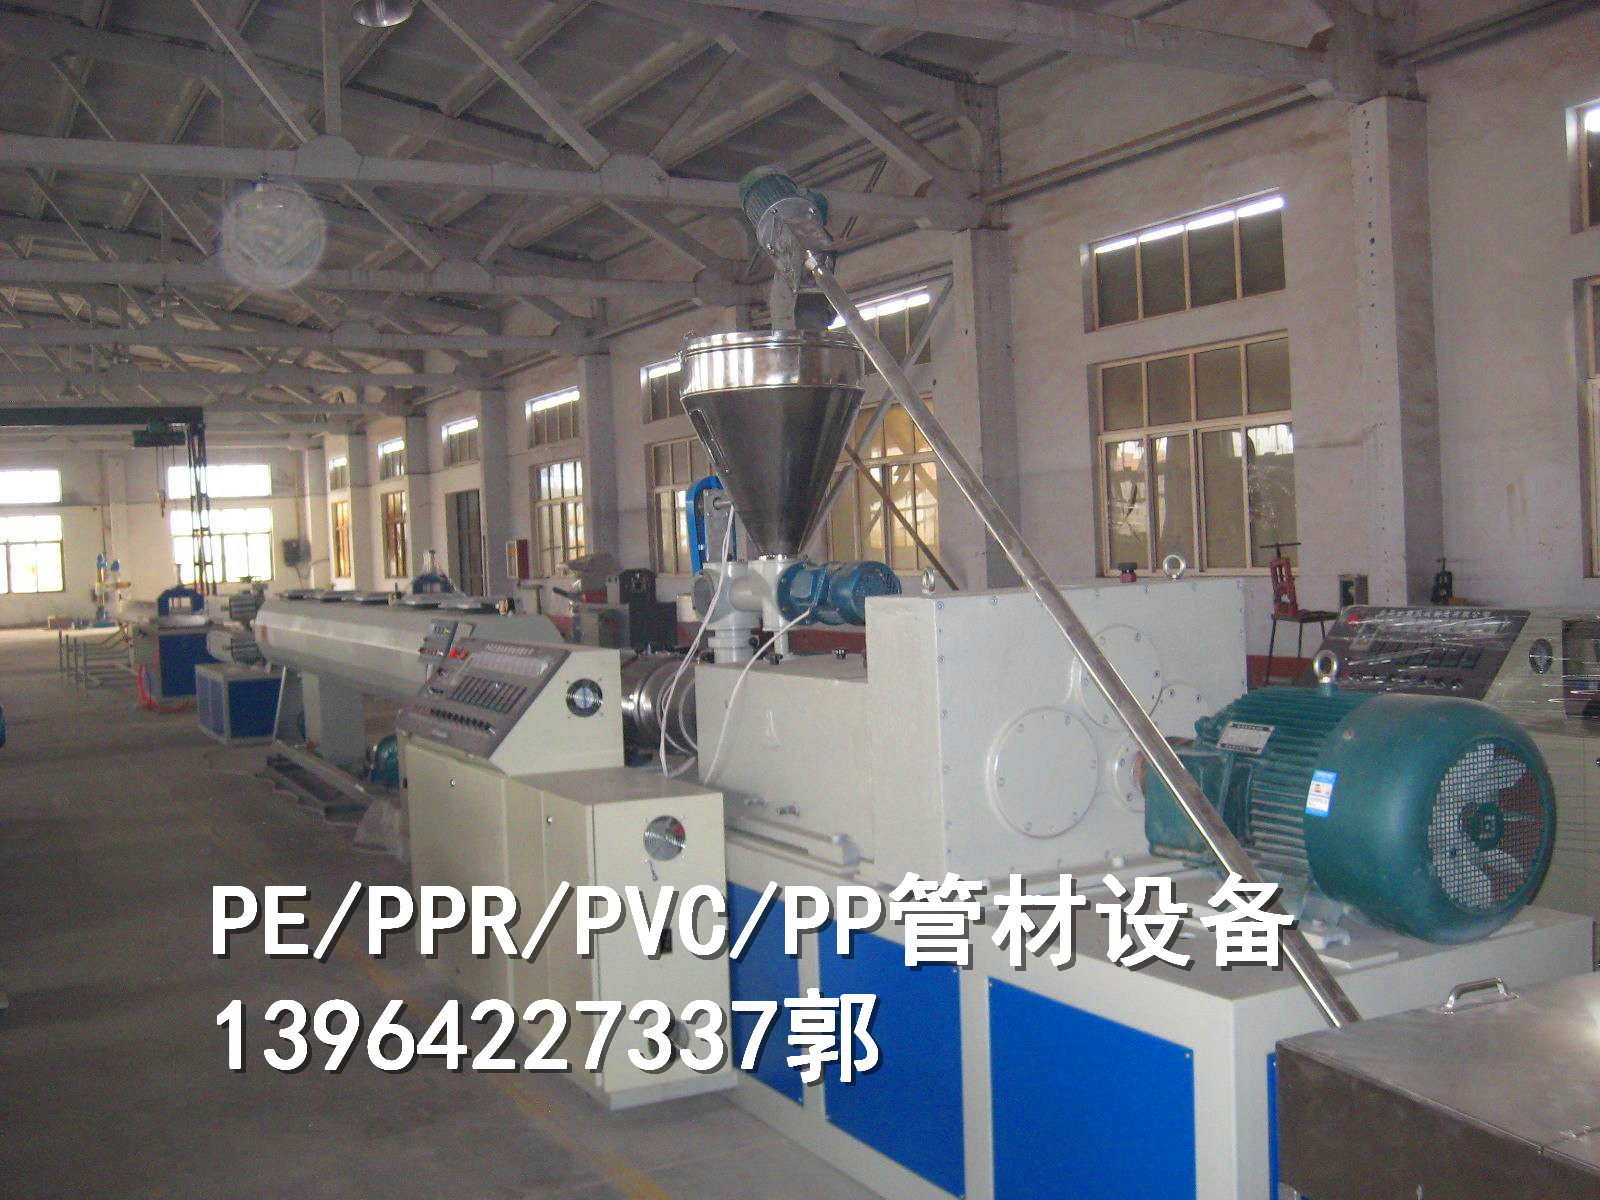 PE/PPR塑料管材设备批发